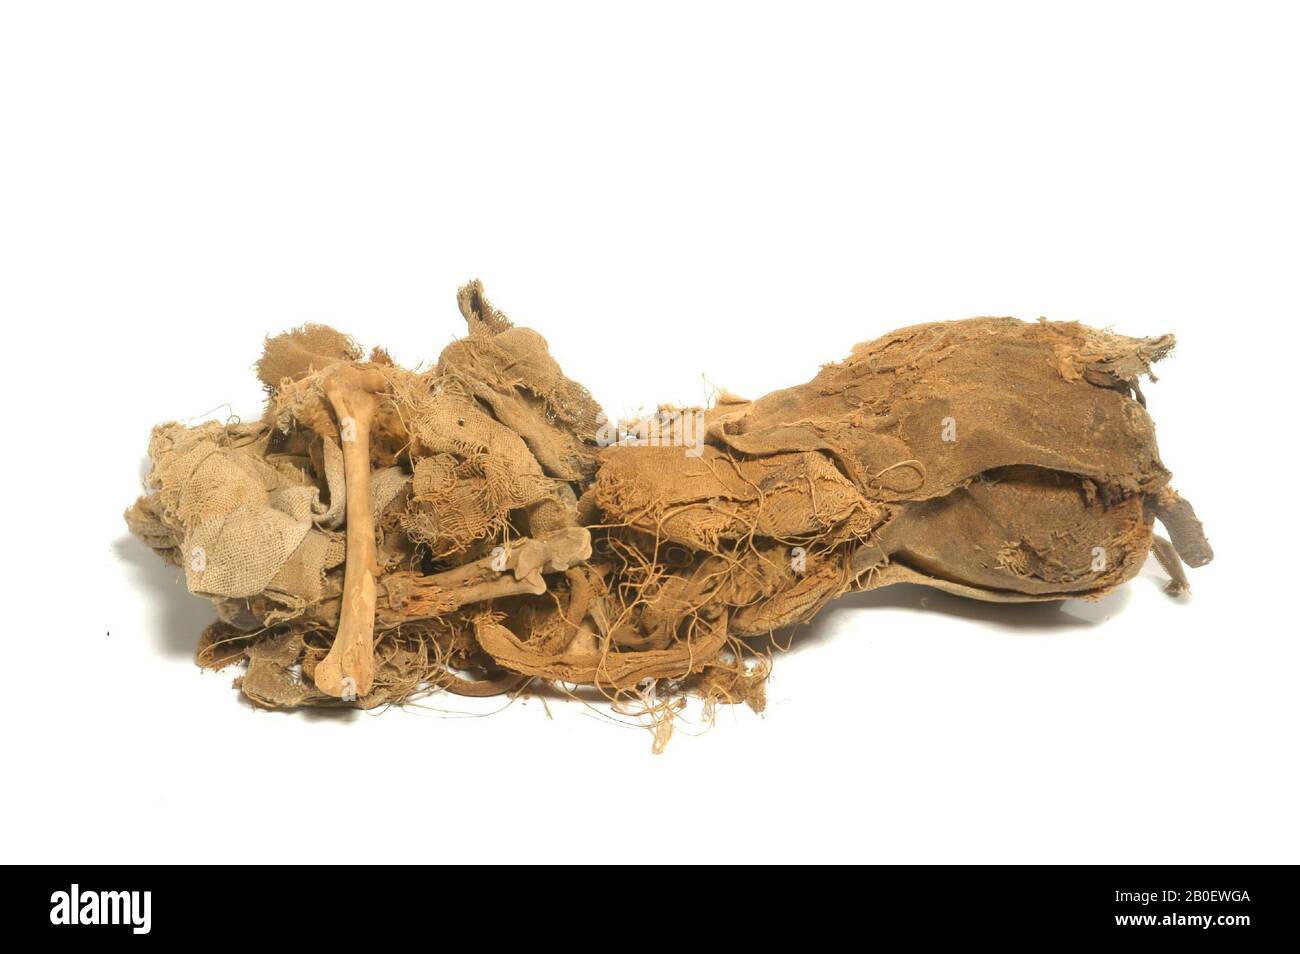 Chat, Reste d'une momie de chat bien décadée avec la tête naturaliste. Le corps de l'animal s'est complètement désintégré dans un ensemble ou des os et des rides lâches. Un morceau rectangulaire de moyenne-fine semble avoir été une fois dans une seule feuille. Une paw avant bien préservée montre que l'animal avait une fourrure rouge-brun courte. Les os longs ont des épiphyses fusionnées et la taille des os et pointent également vers un animal adulte. La tête est toujours couverte par deux bandages traversifs ou un linge de taille moyenne (tissage tabby à surface de chaîne, environ 11 x 24 fils Banque D'Images